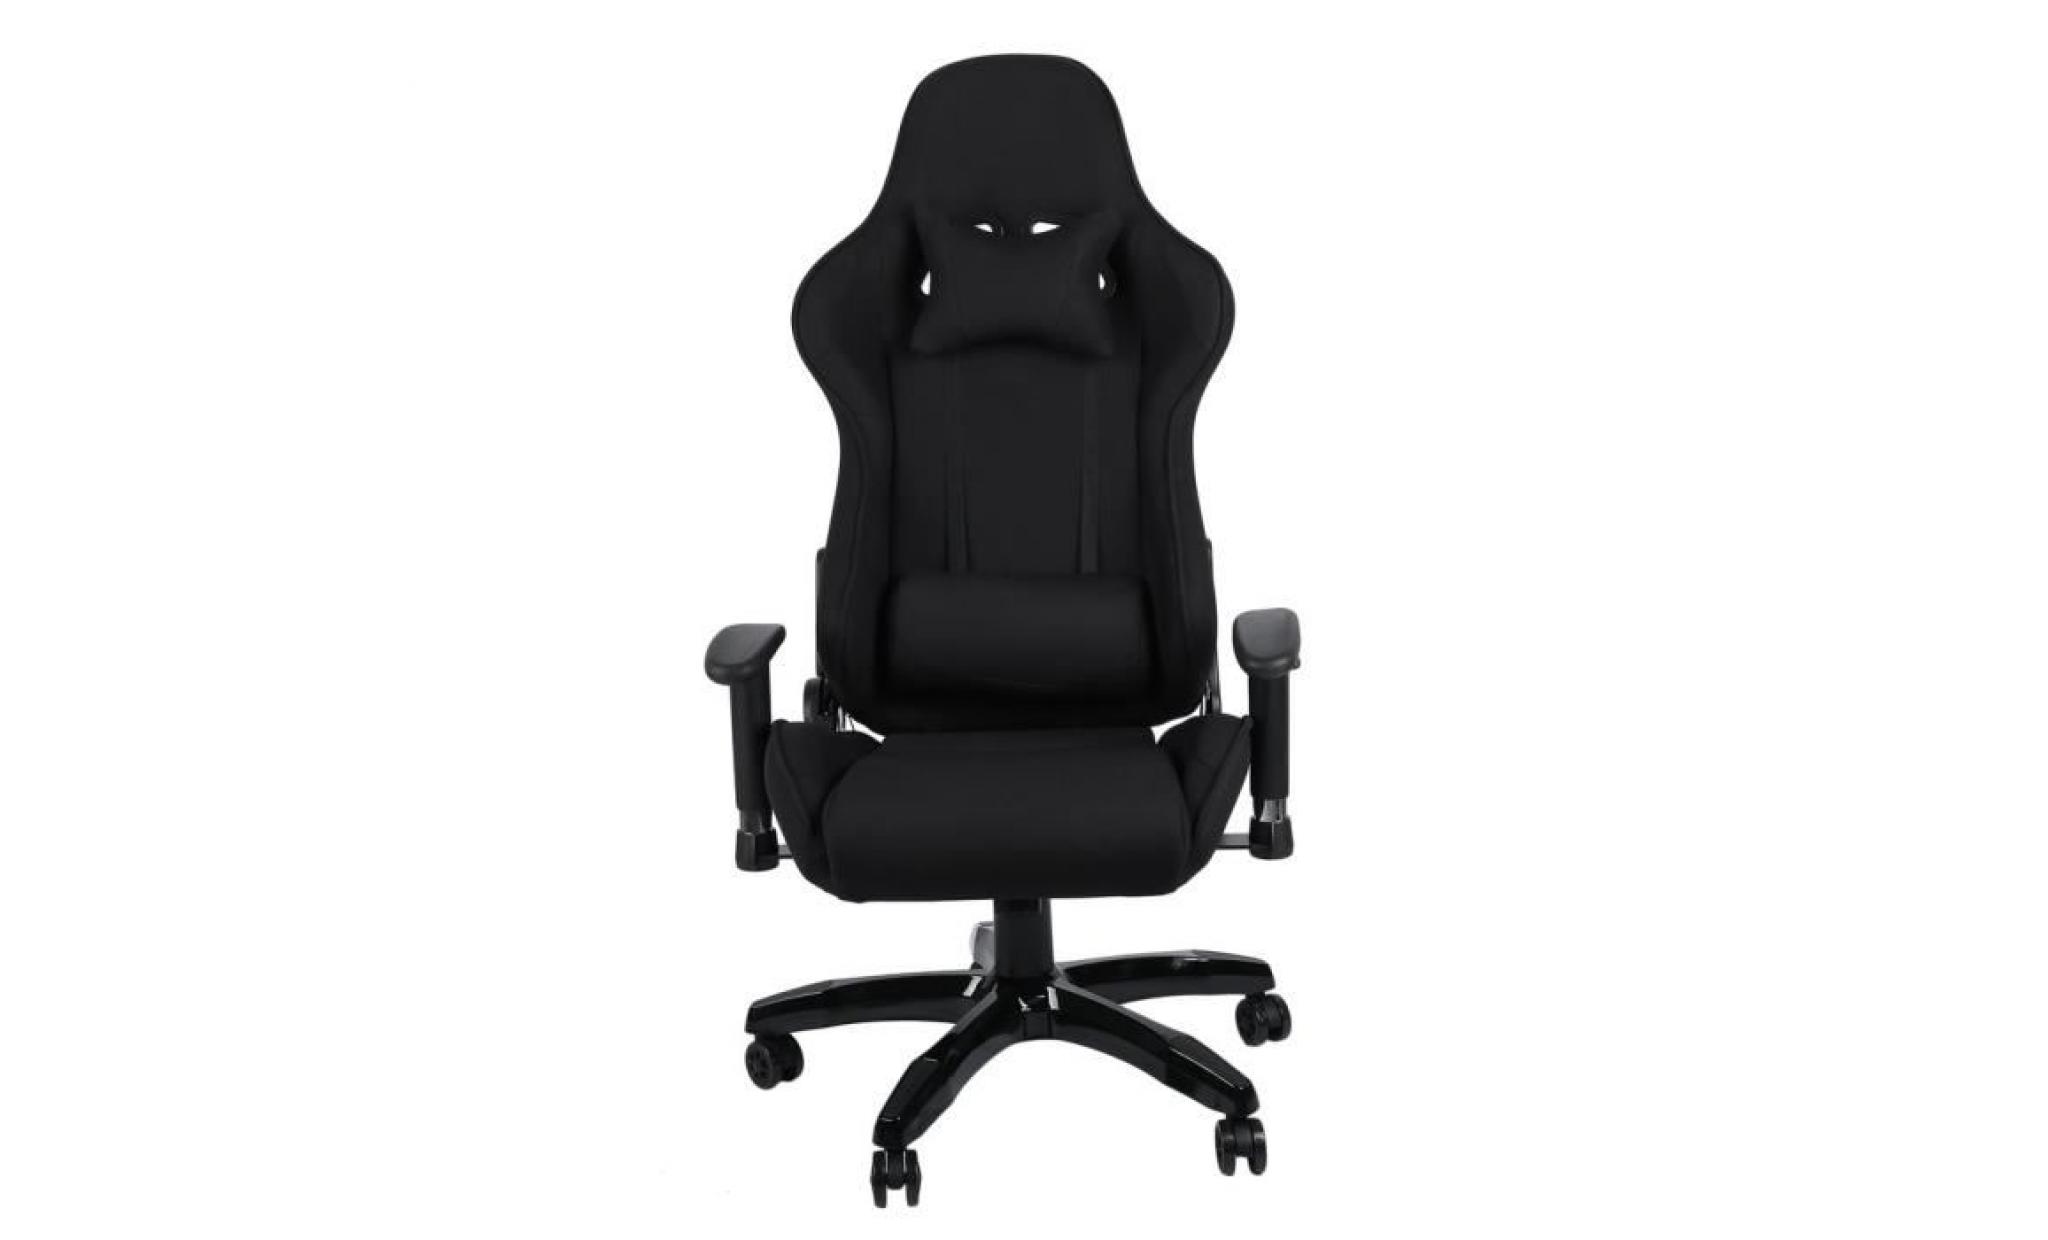 leshp® fauteuil de bureau façon siège baquet rallye en tissu noir